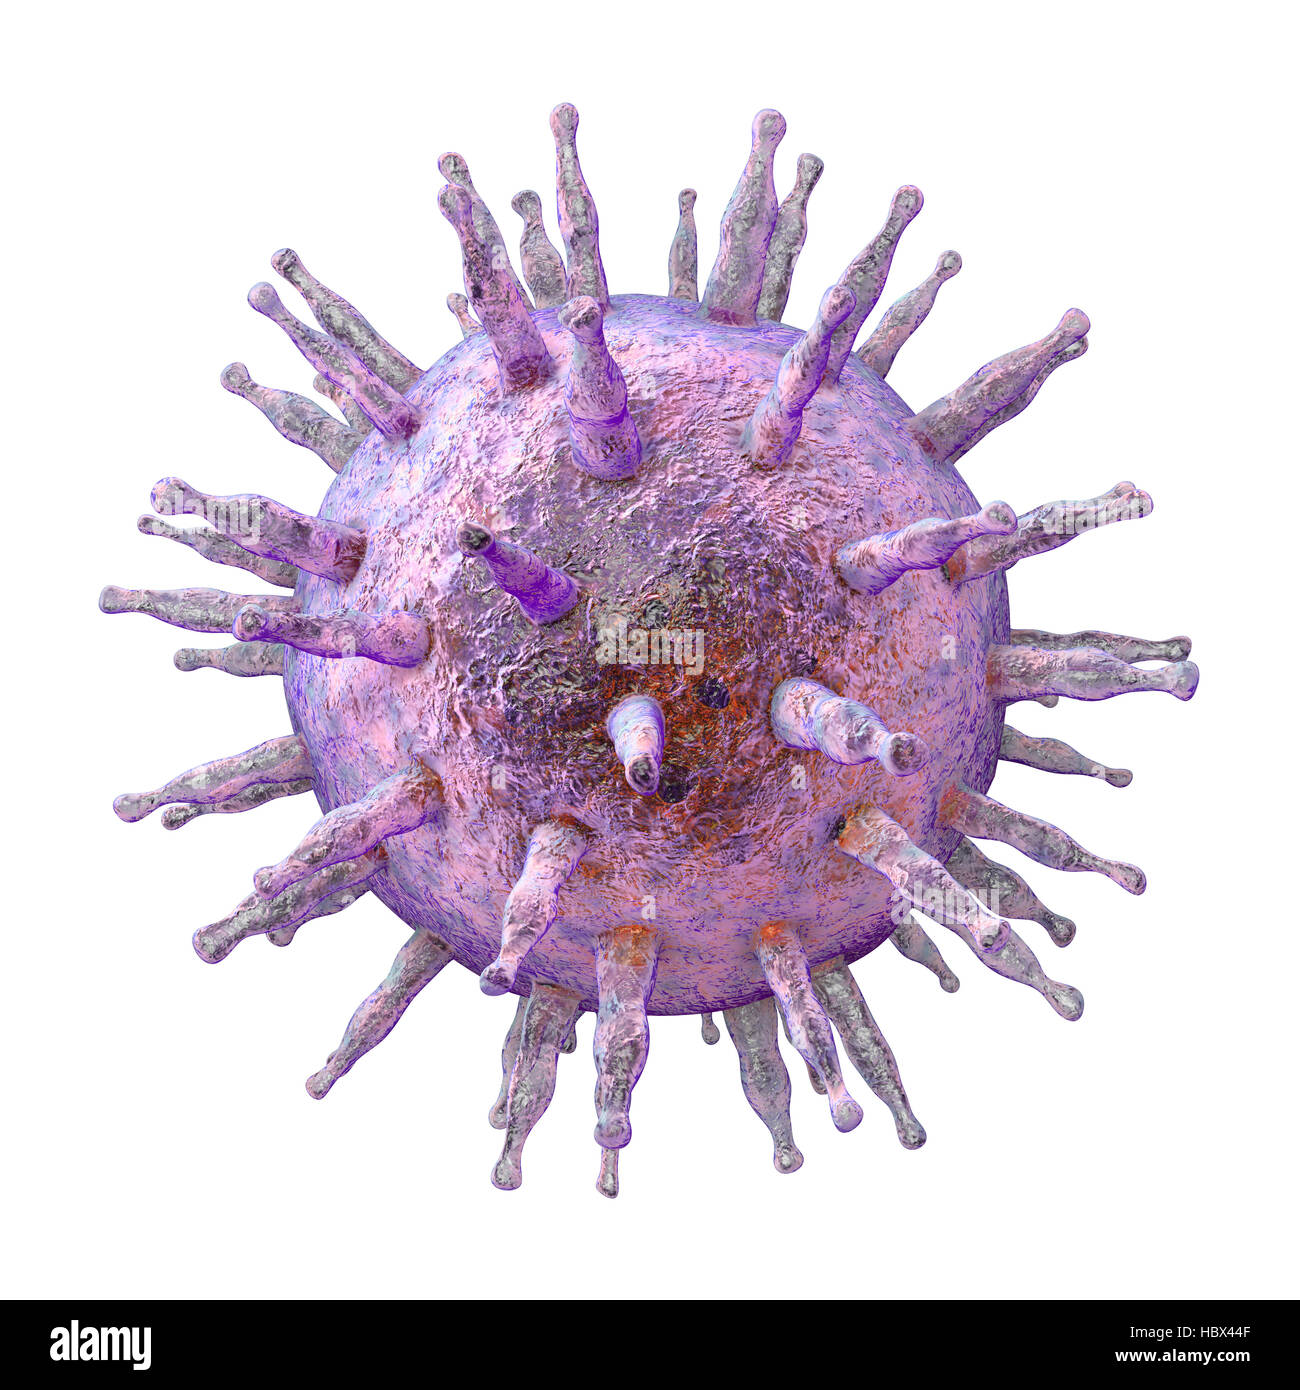 Il virus di Epstein-Barr (EBV), computer illustrazione. EBV, noto anche come virus di herpes umano 4, è 1 di 8 herpes virus che infetta l'uomo. È meglio conosciuta come la causa di mononucleosi infettiva (febbre ghiandolare), ma è anche associato ad alcune forme di cancro, includendo linfoma di Burkitt. In entrambe le infezioni, il virus infetta un tipo di globuli bianchi, i linfociti B. Infezione con EBV è comune e di solito innocuo; fattori addizionali di potenziare lo sviluppo di malattie più gravi. Foto Stock